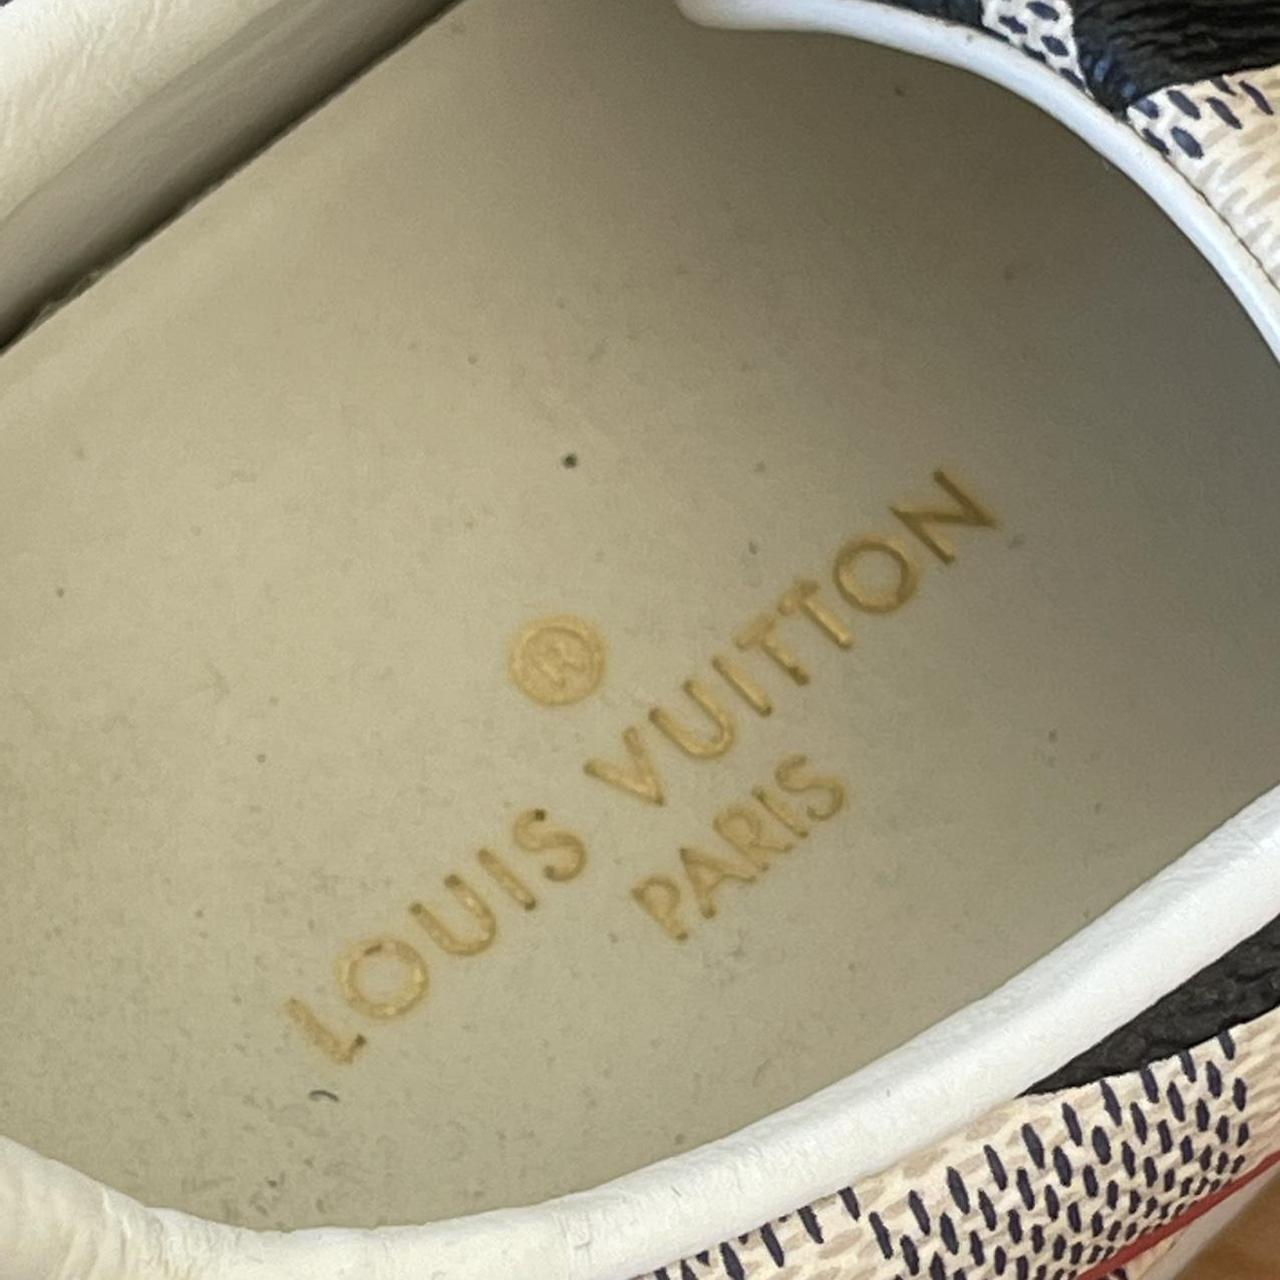 Louis Vuitton Multicolor Damier Azur Canvas And Leather Trim Overcloud Lace  Up Sneakers 37 Louis Vuitton